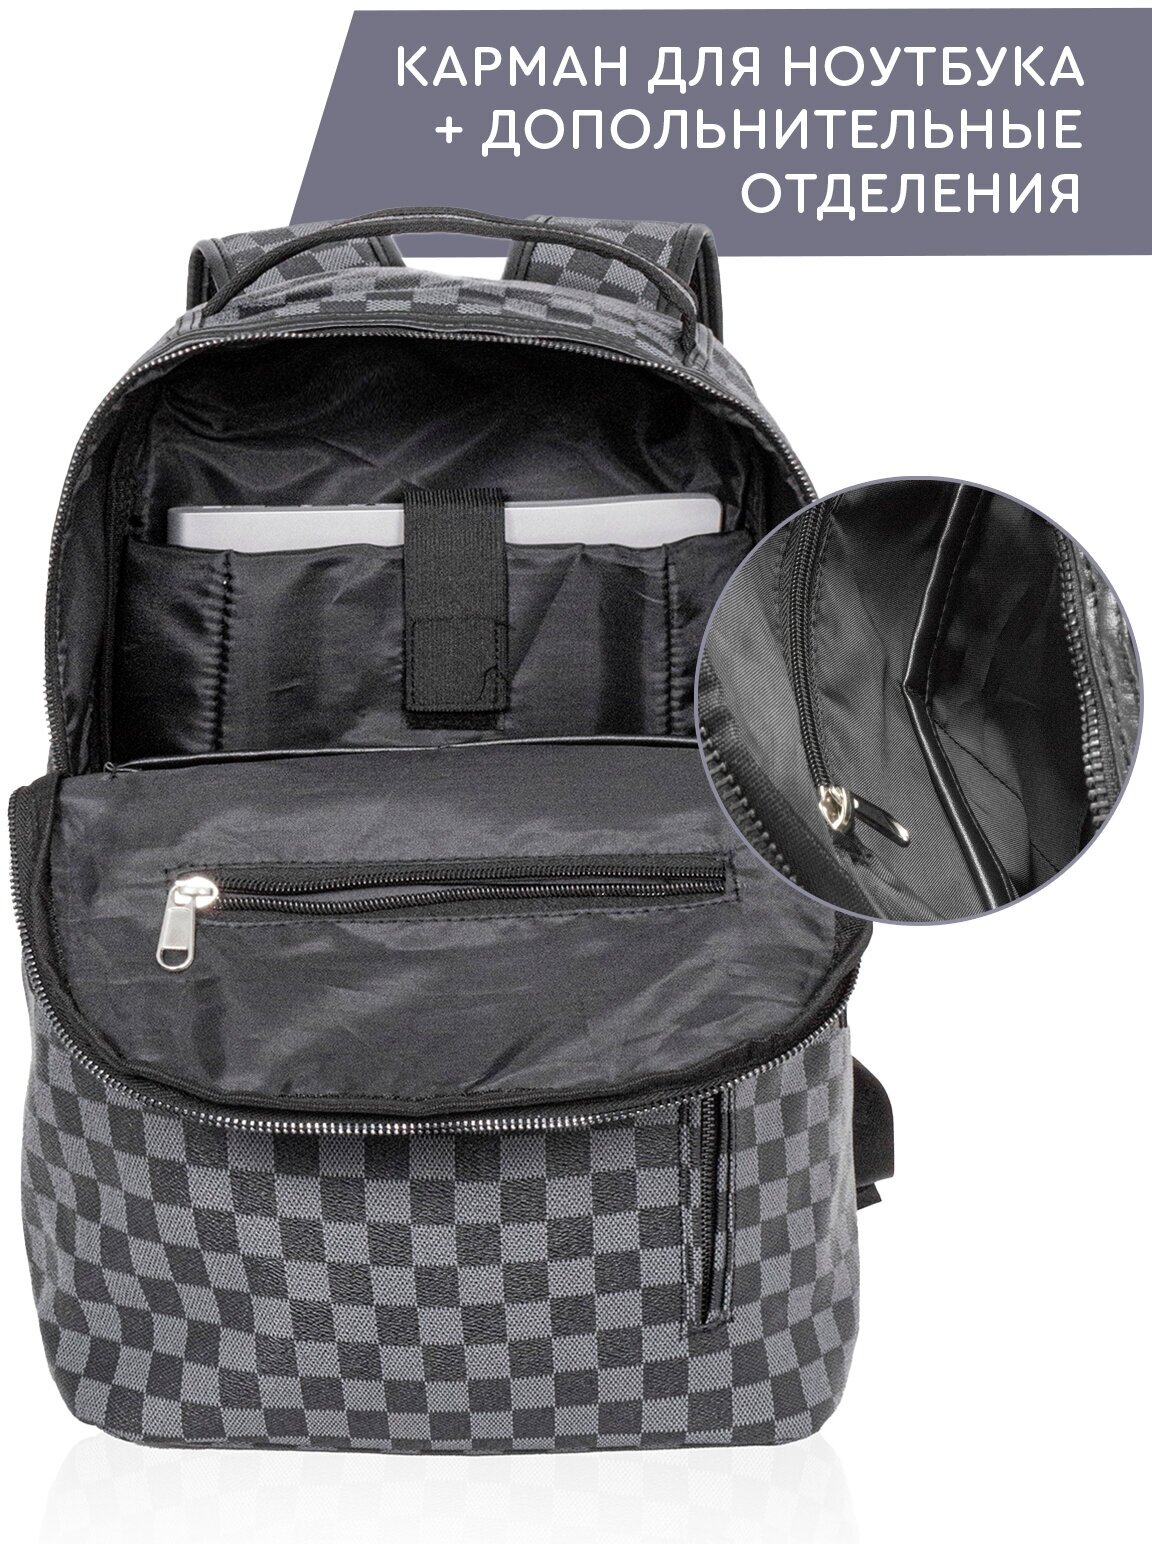 Рюкзак (серо-черный клетчатый) UrbanStorm мужской женский кожаный экокожа городской спортивный школьный повседневный офис туристический сумка ранец